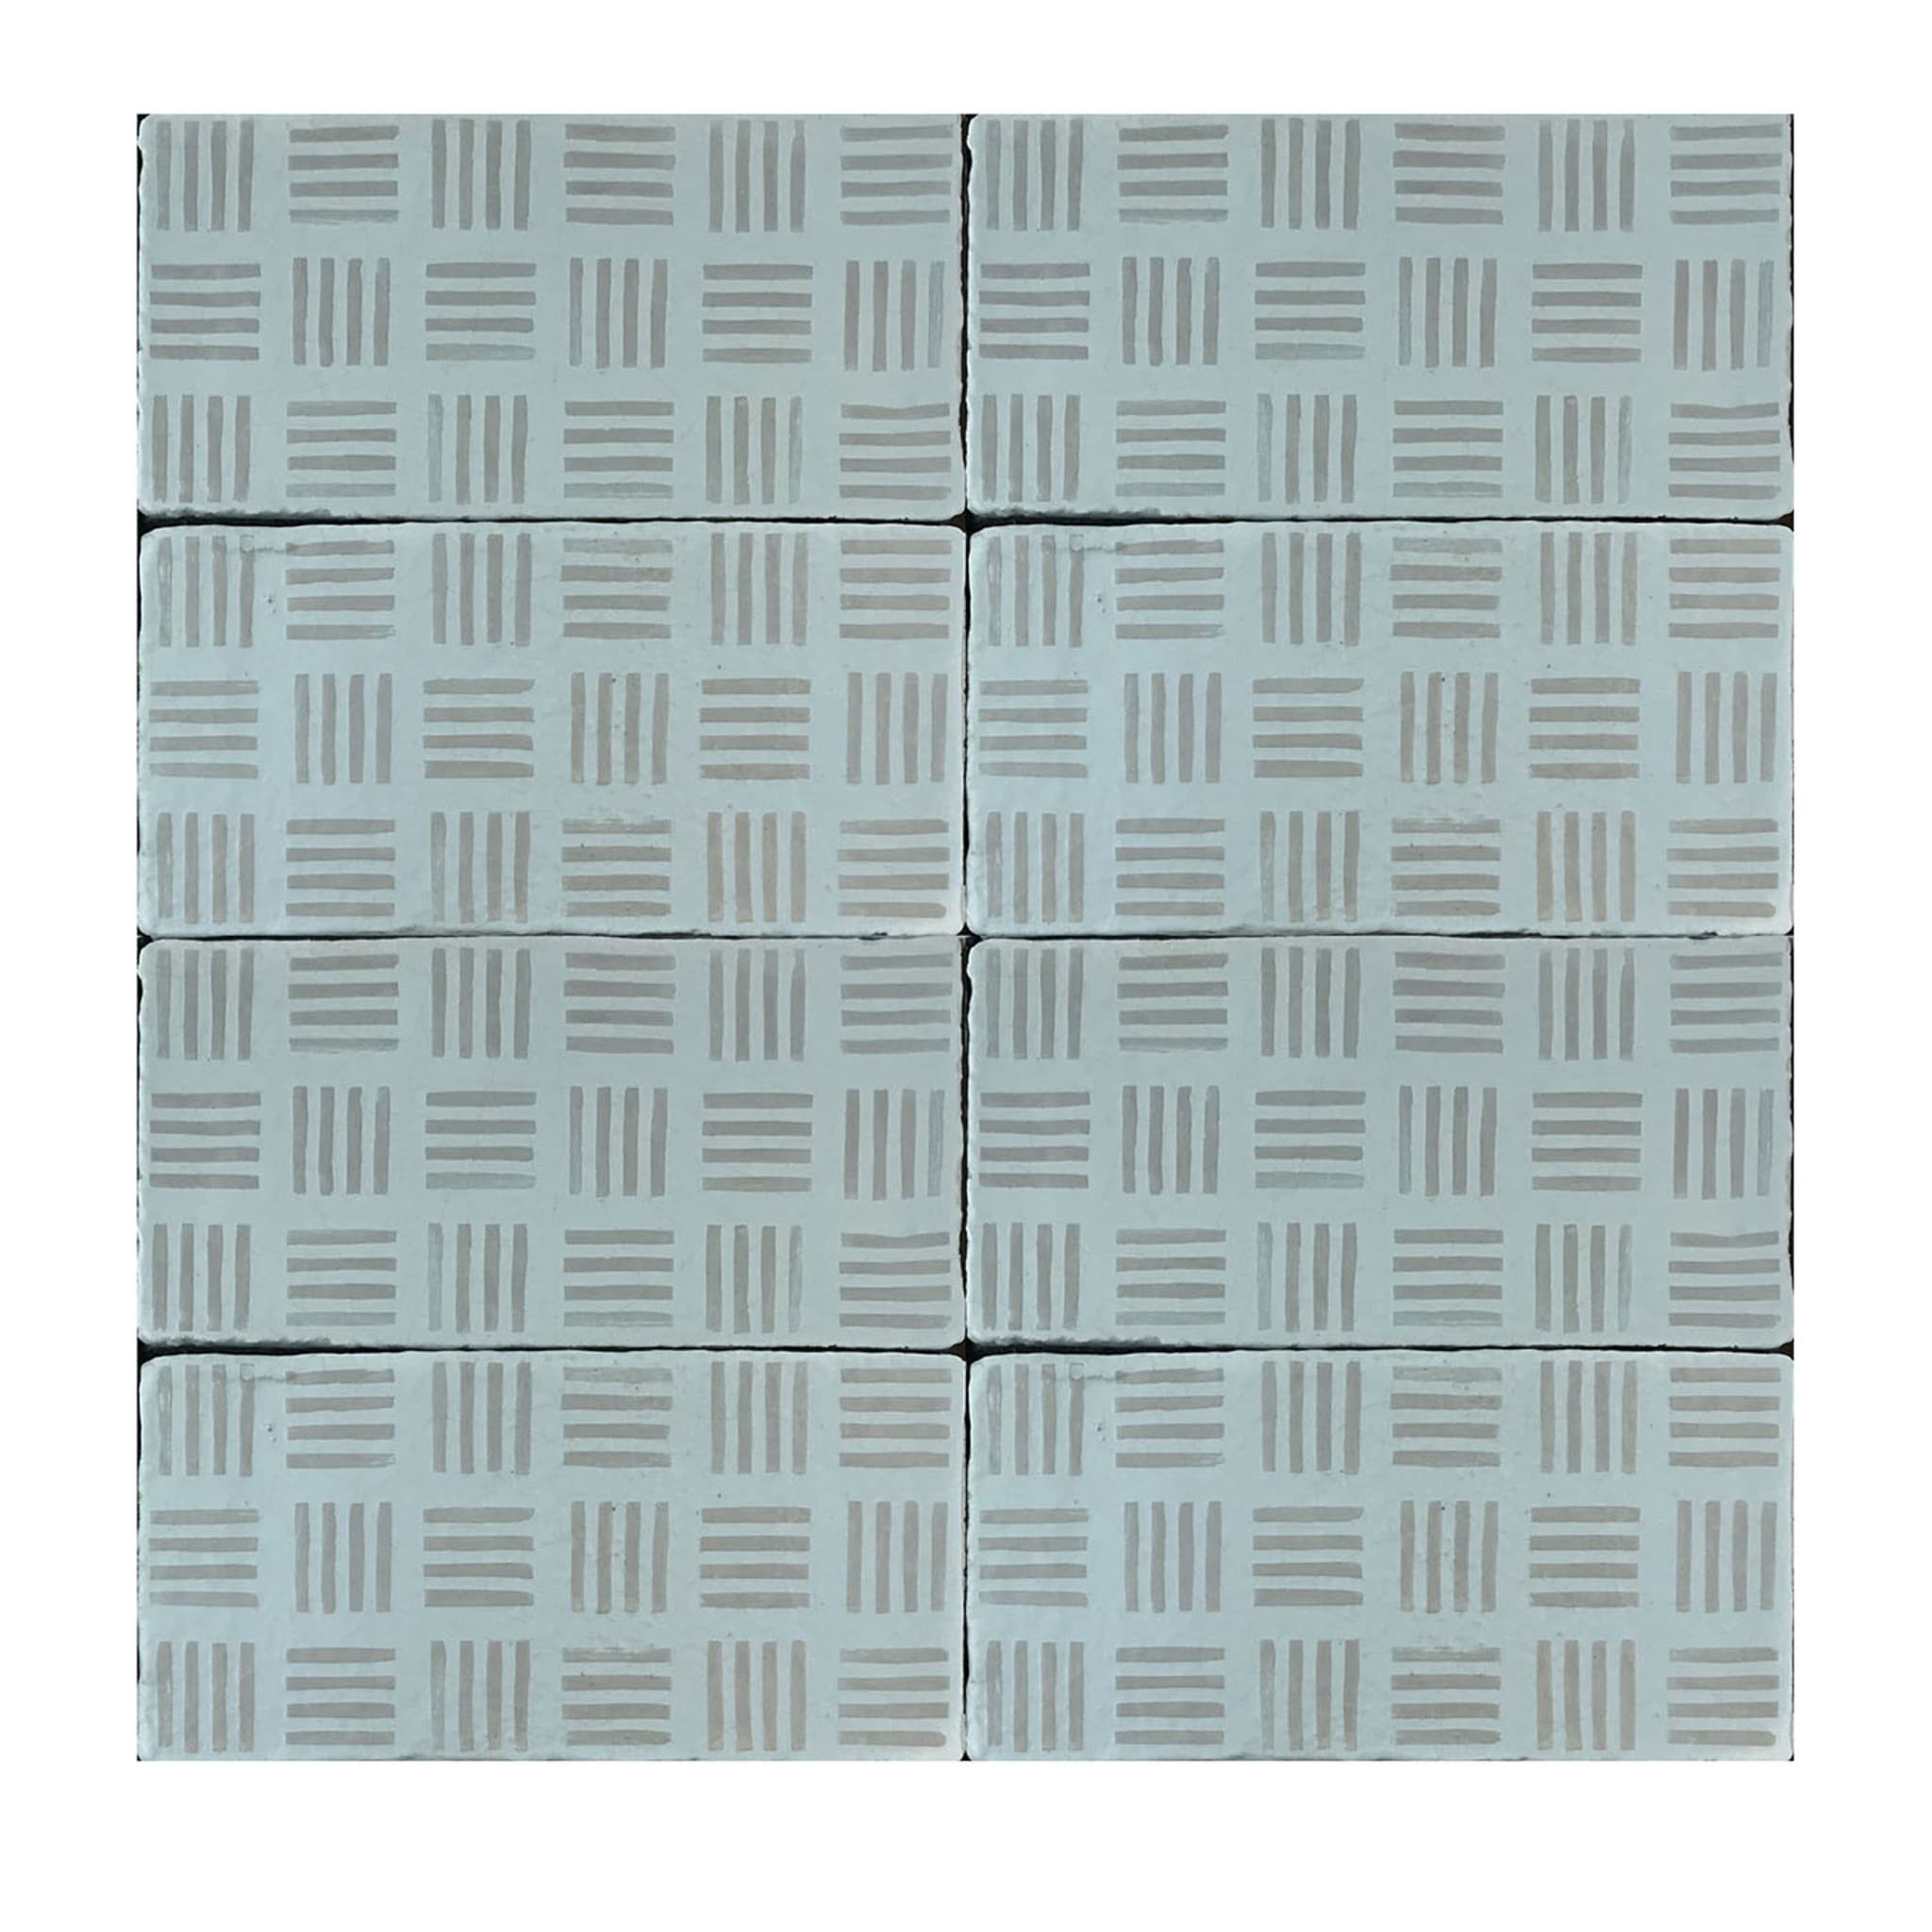 Daamè Set of 50 Rectangular Light Gray Tiles #2 - Main view